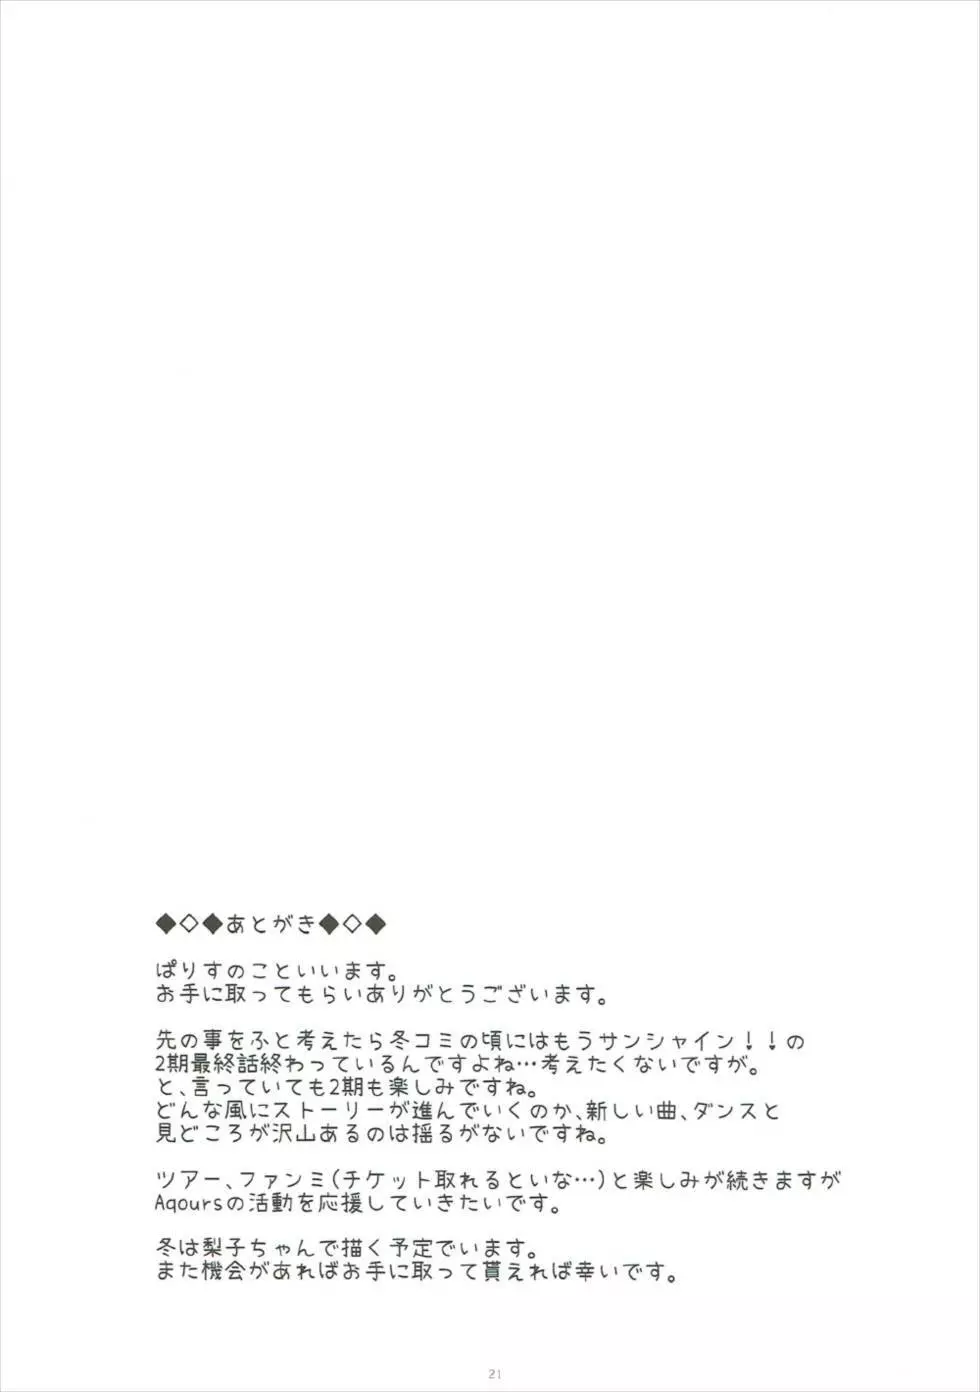 Yoshiko’s Account 20ページ